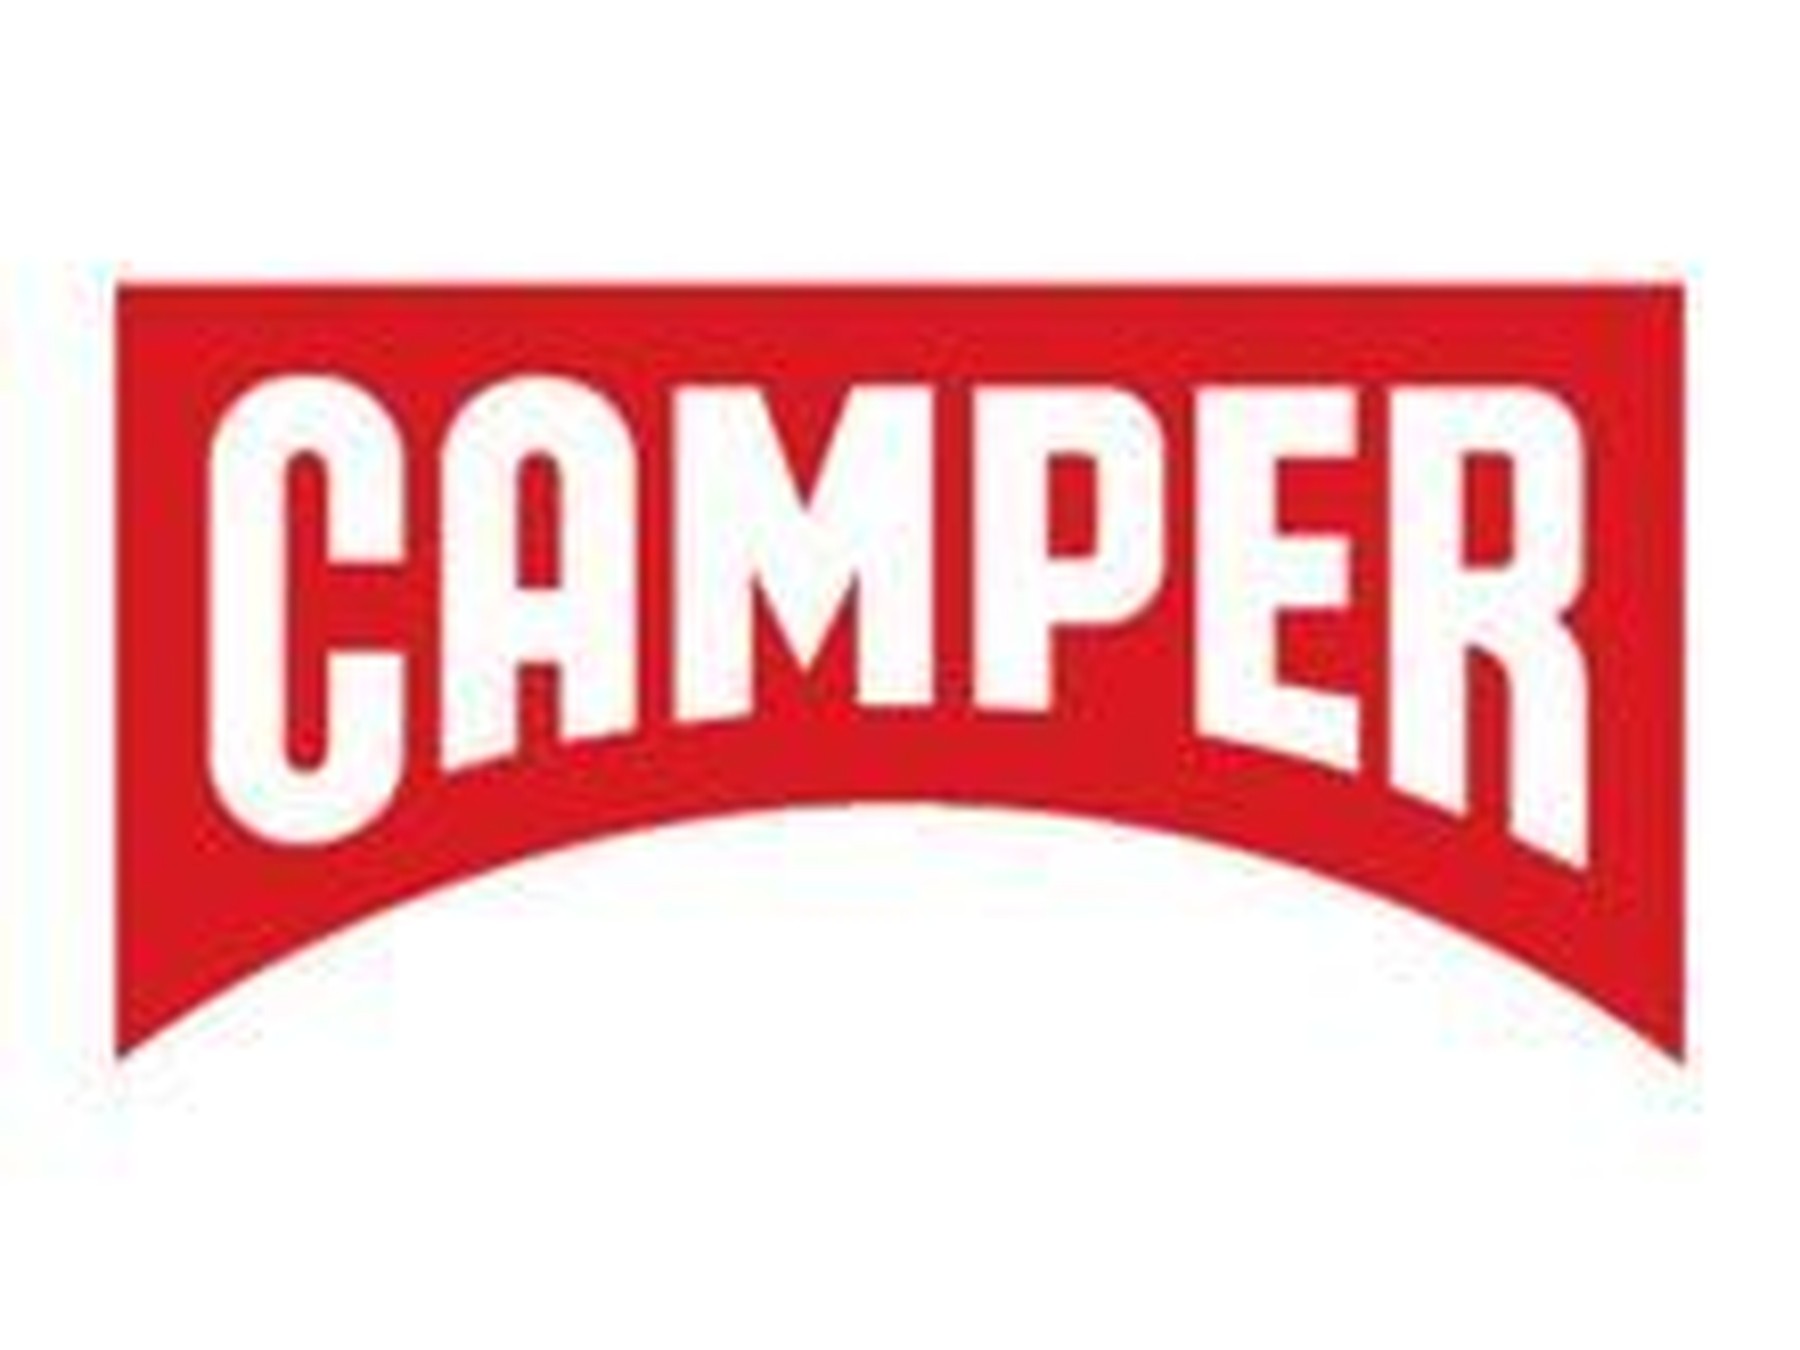 Código promocional Camper